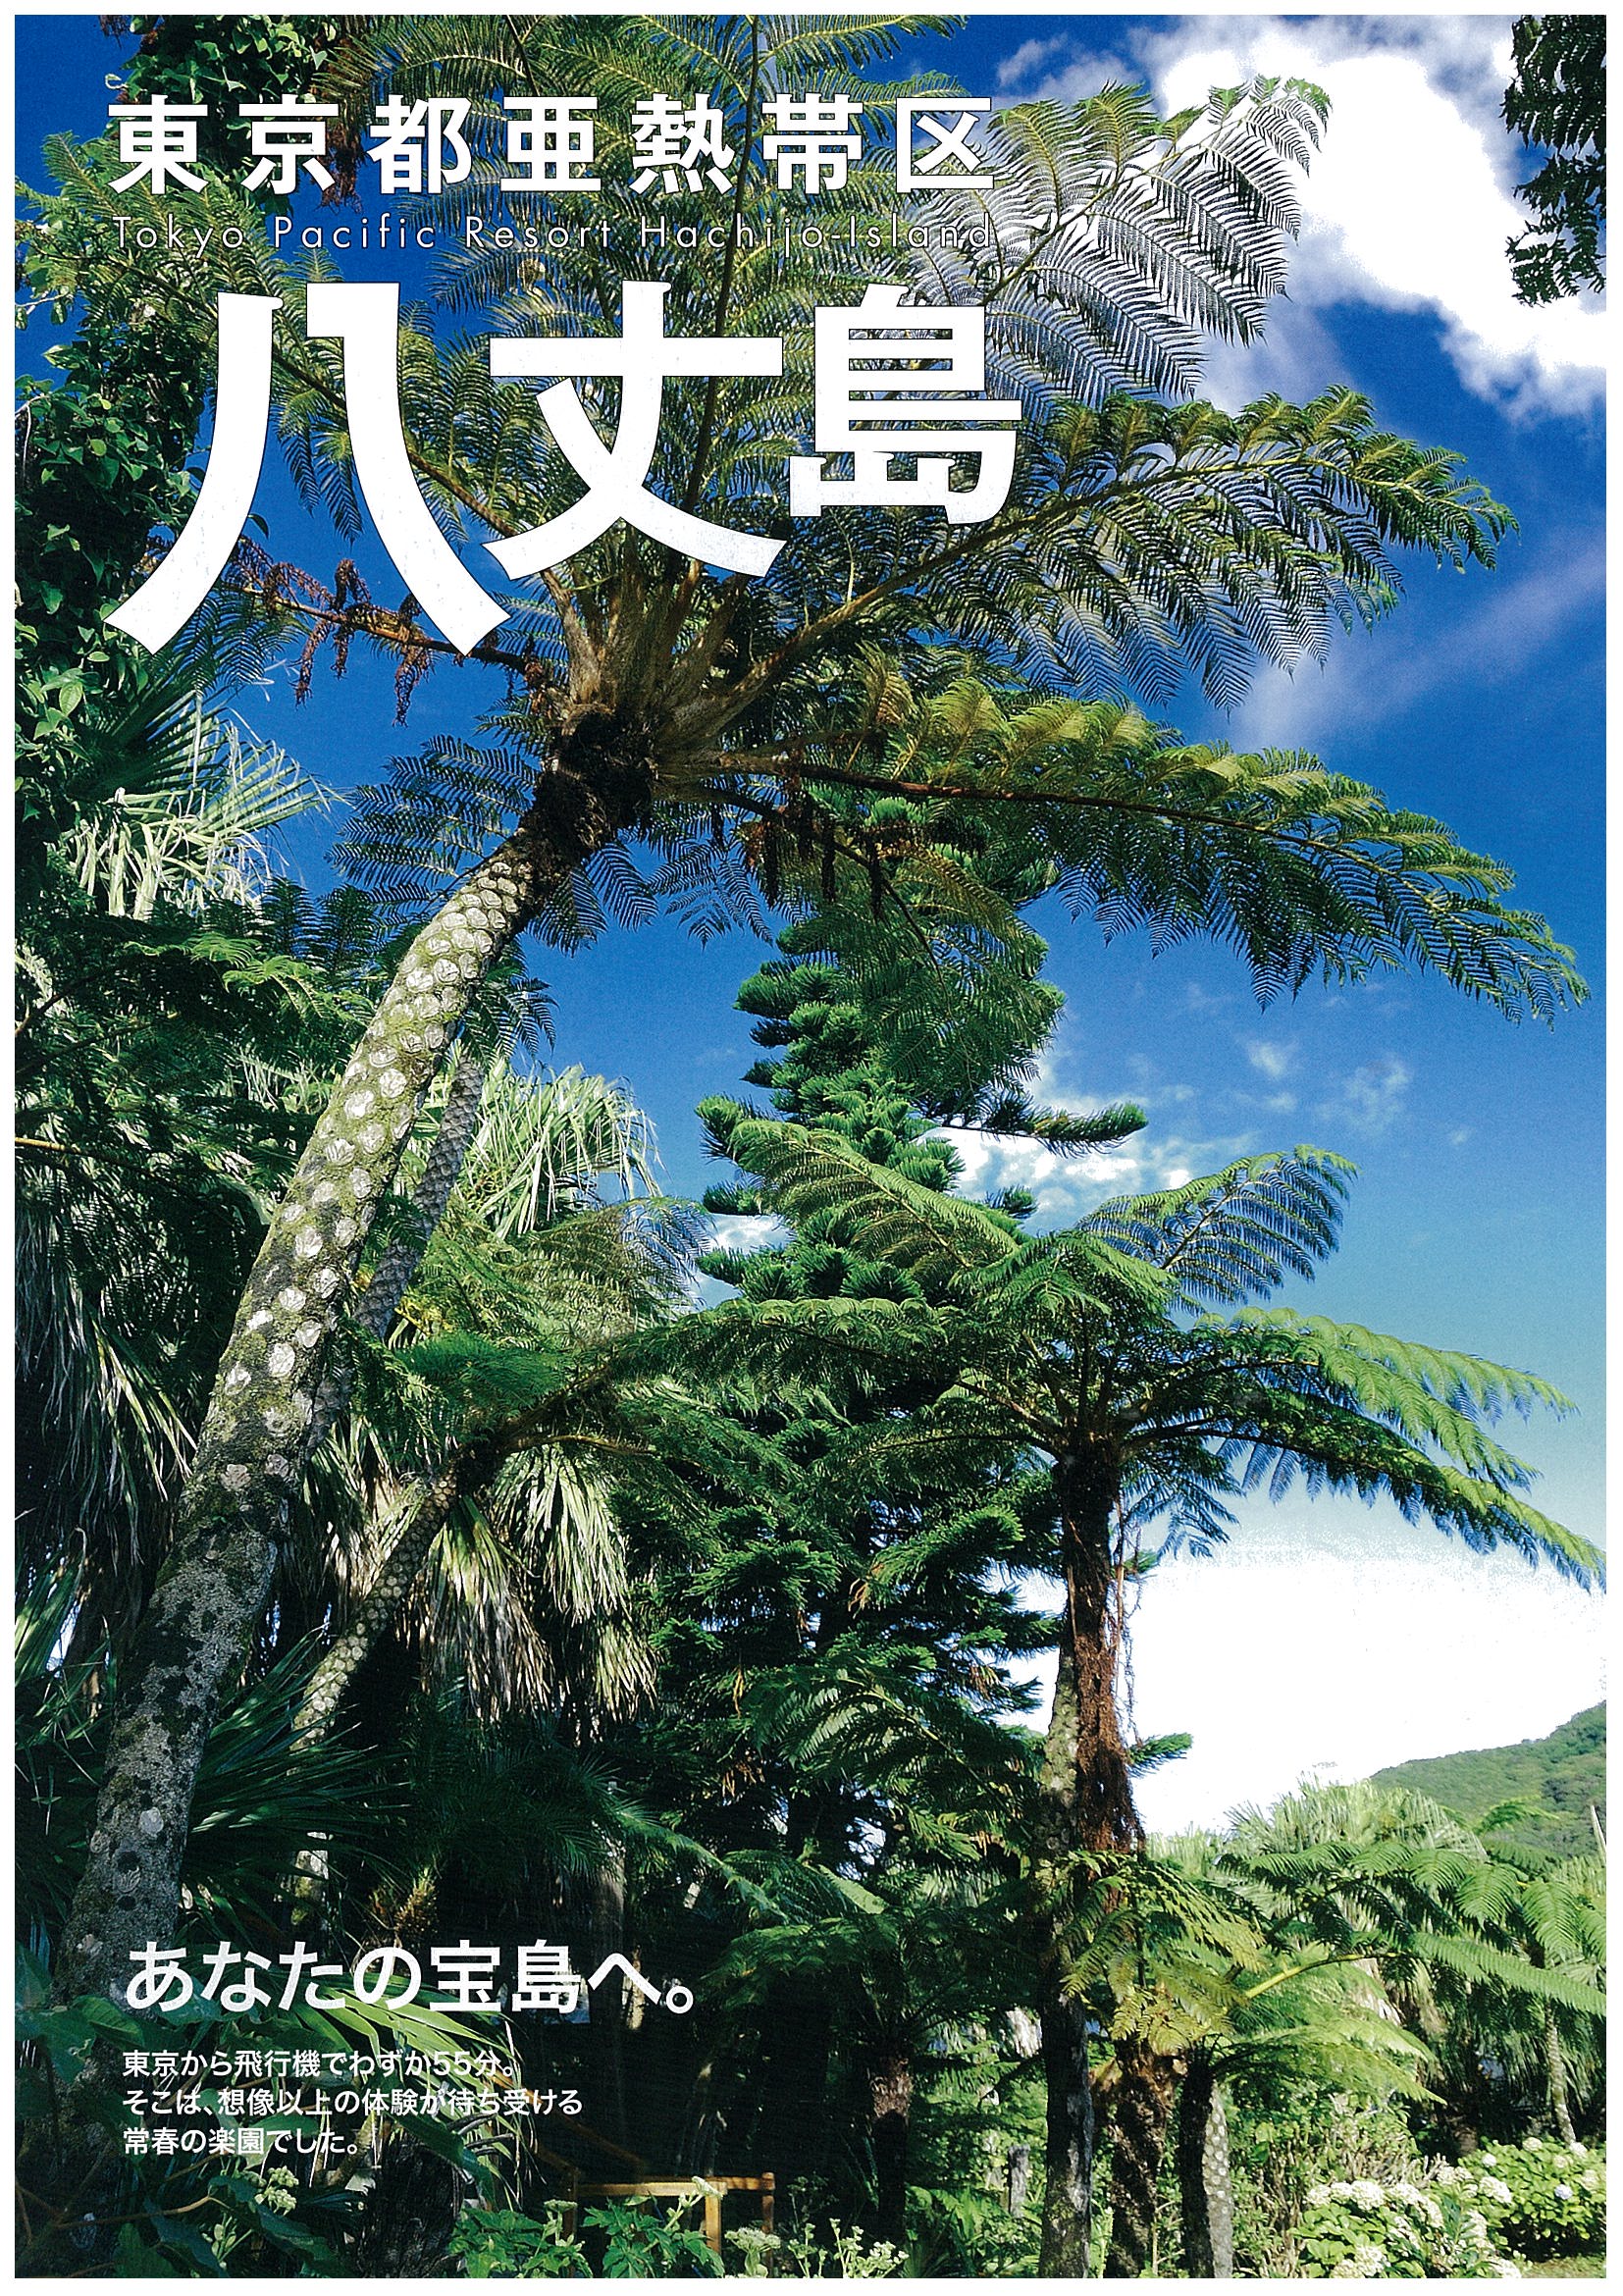 八丈島の観光ポスター「わたしの宝島」